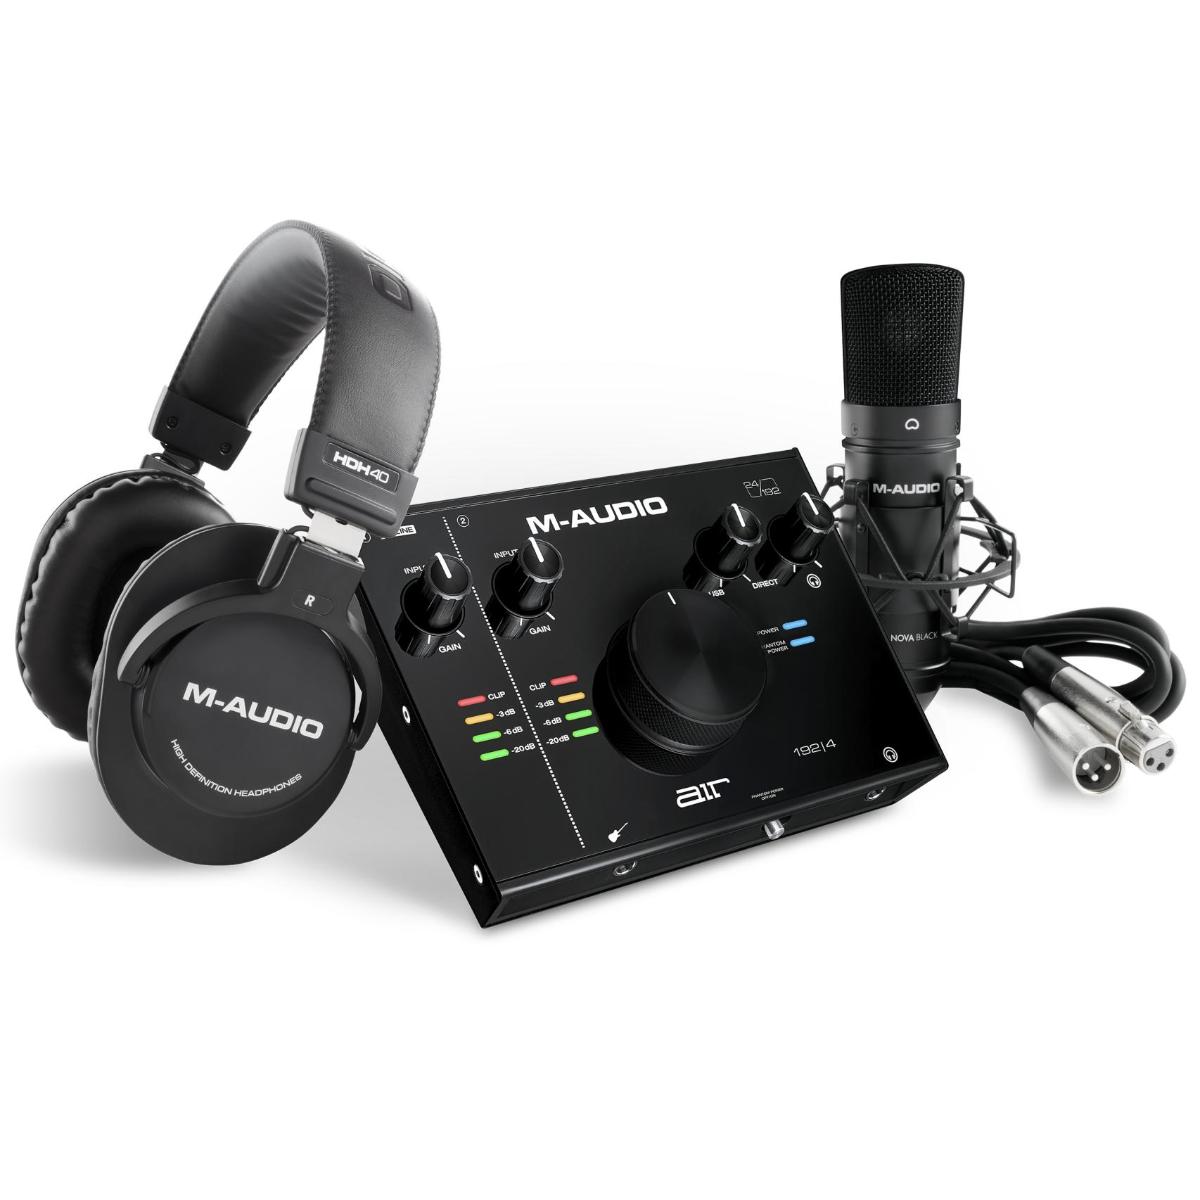 Портастудии M-Audio AIR 192 | 4 Vocal Studio Pro bm800 конденсаторный микрофон lit pro audio studio запись и вещание регулируемый микрофон подвеска ножничный рычаг поп фильтр серебристый